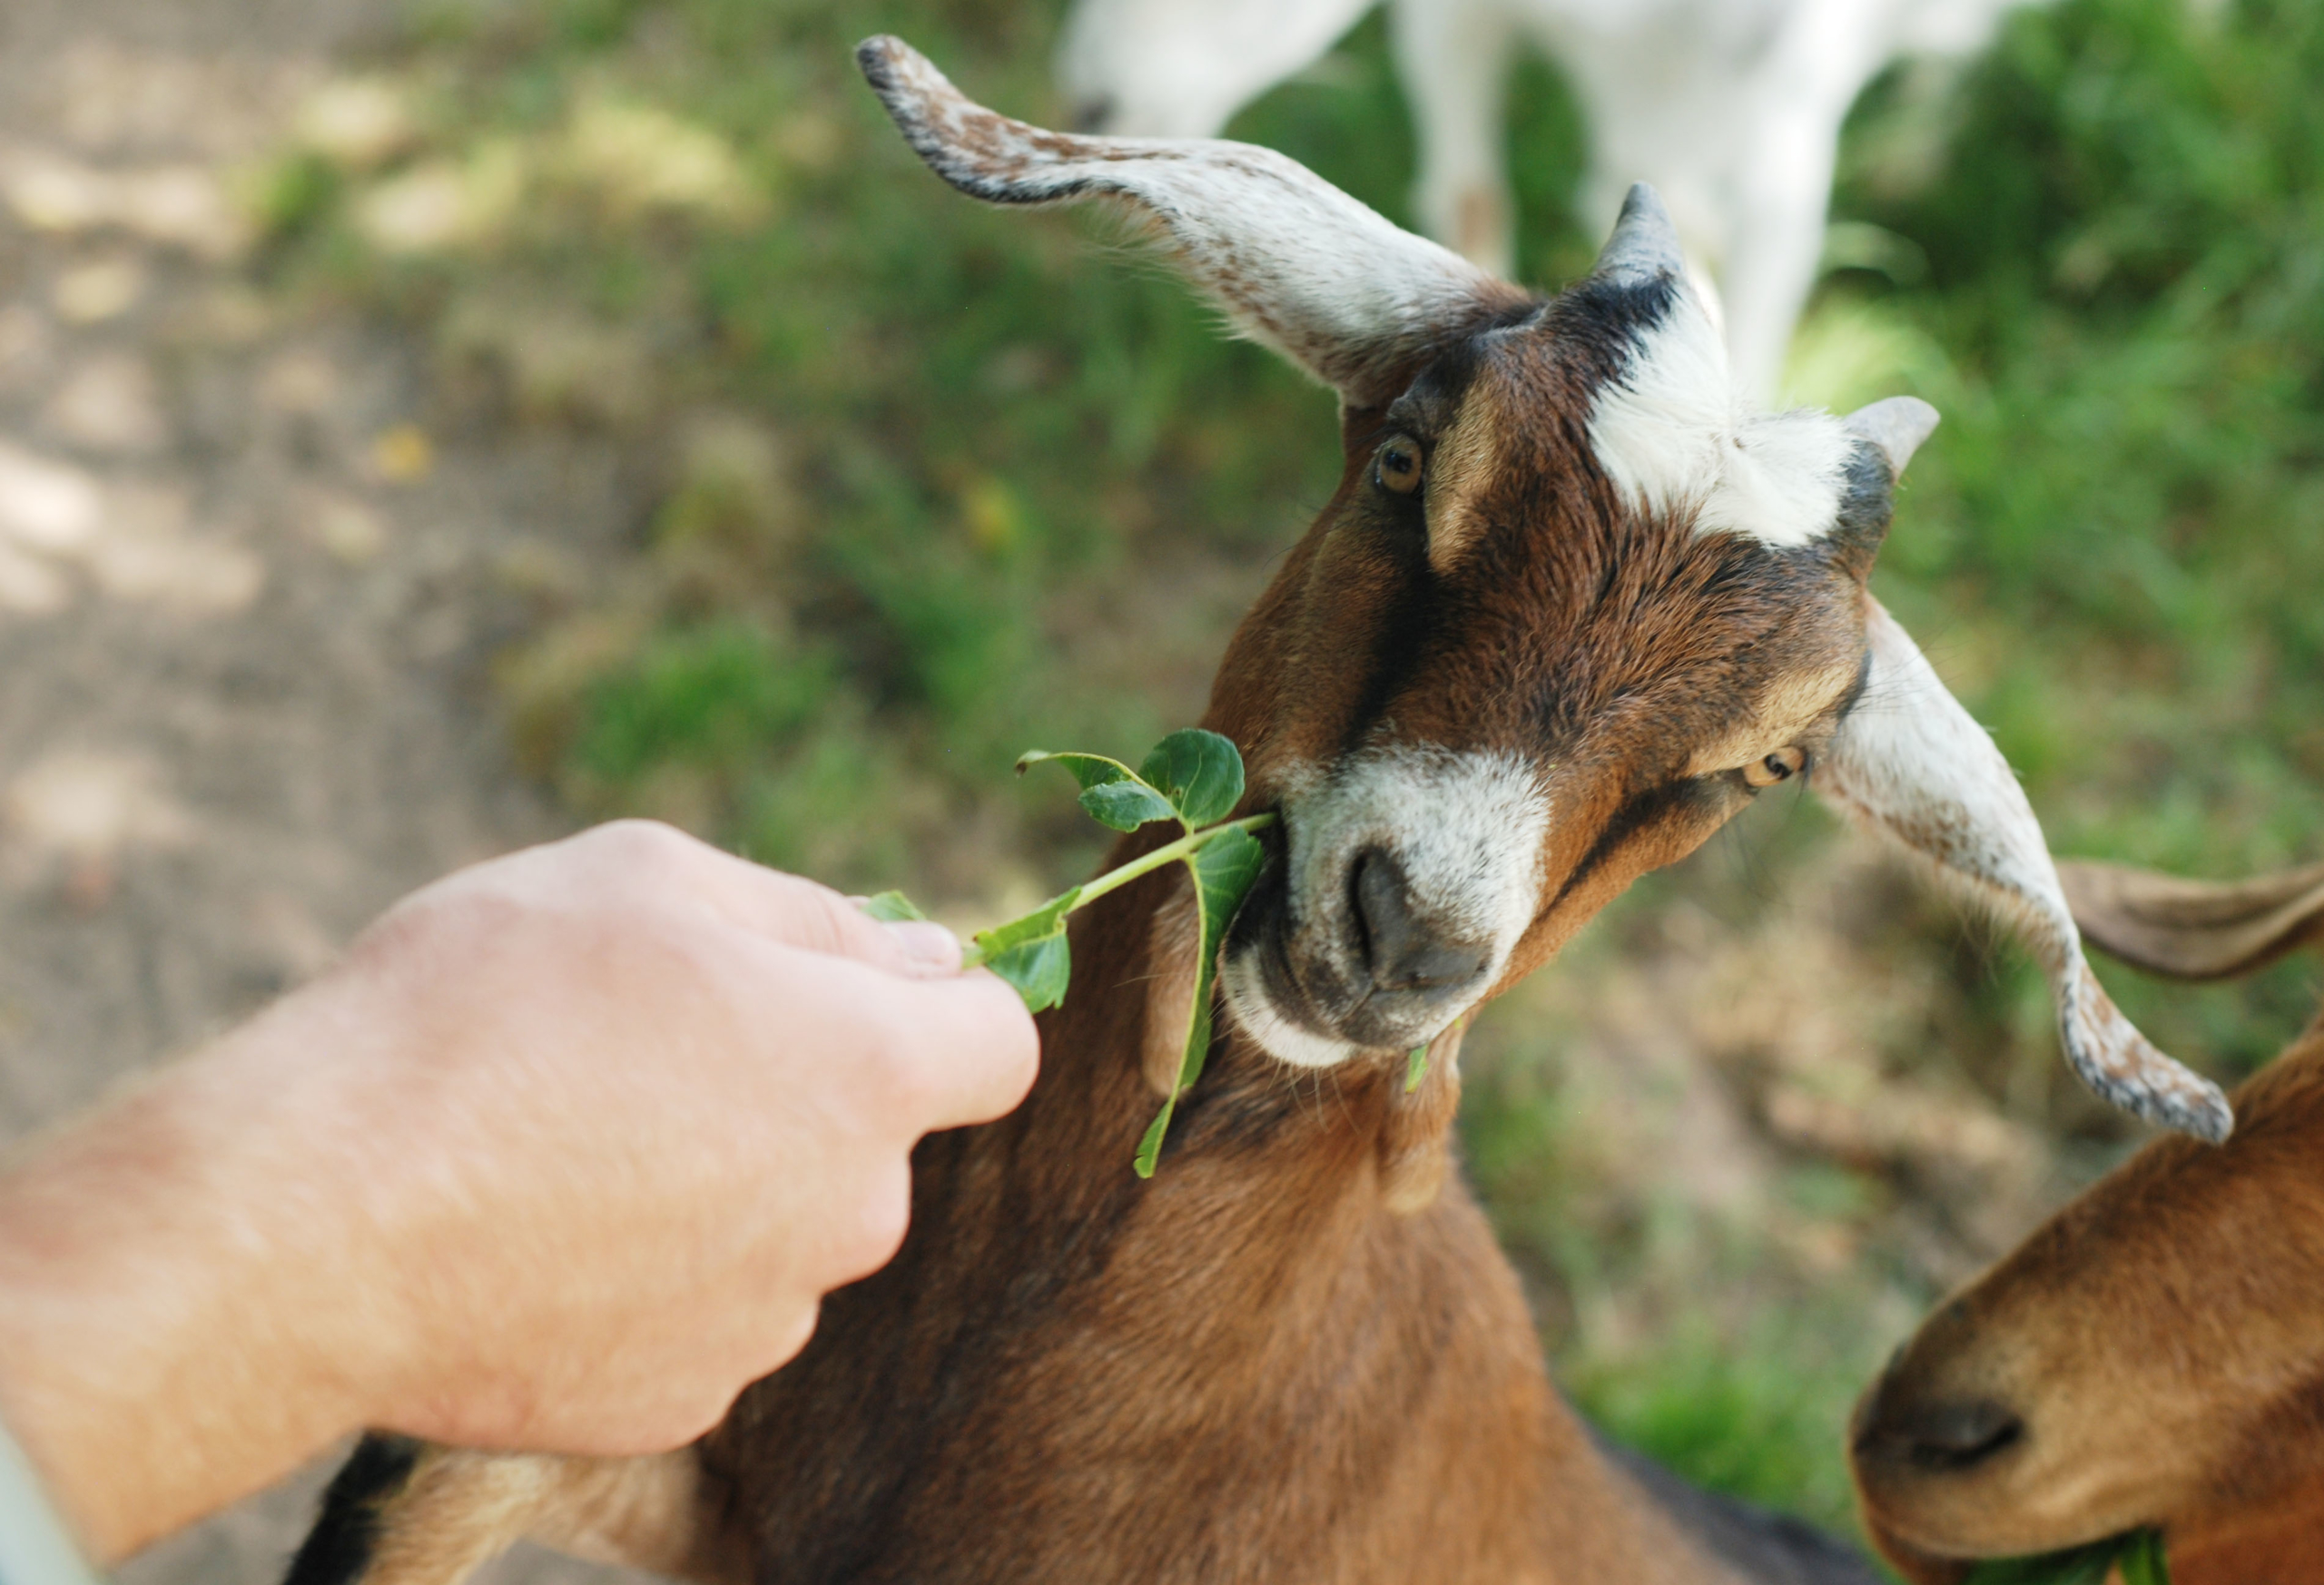 A goat eats a plant